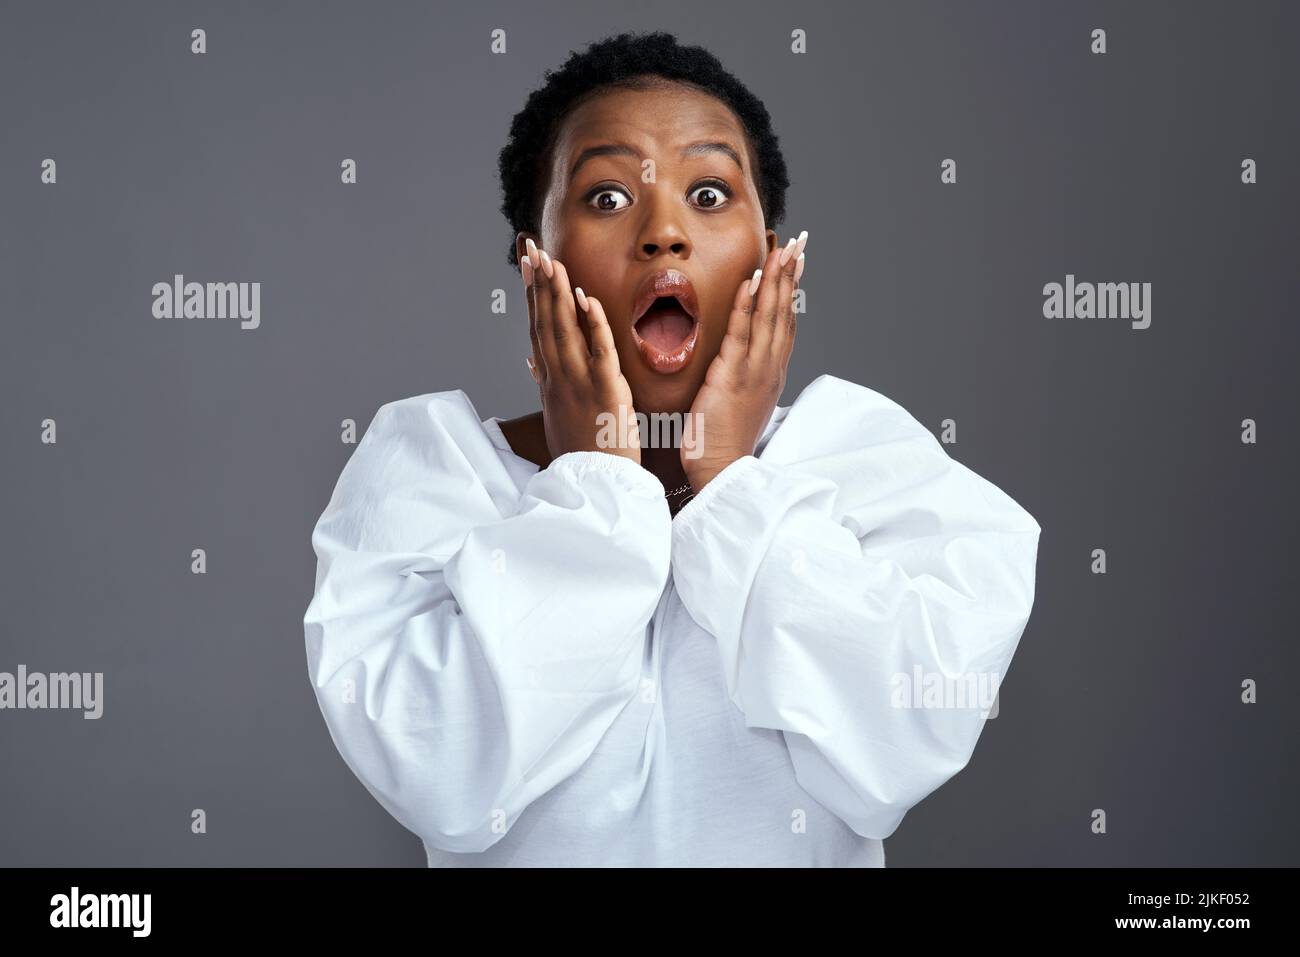 Haben Sie gehört? Eine Frau, die schockiert aussieht, während sie vor einem grauen Hintergrund steht. Stockfoto